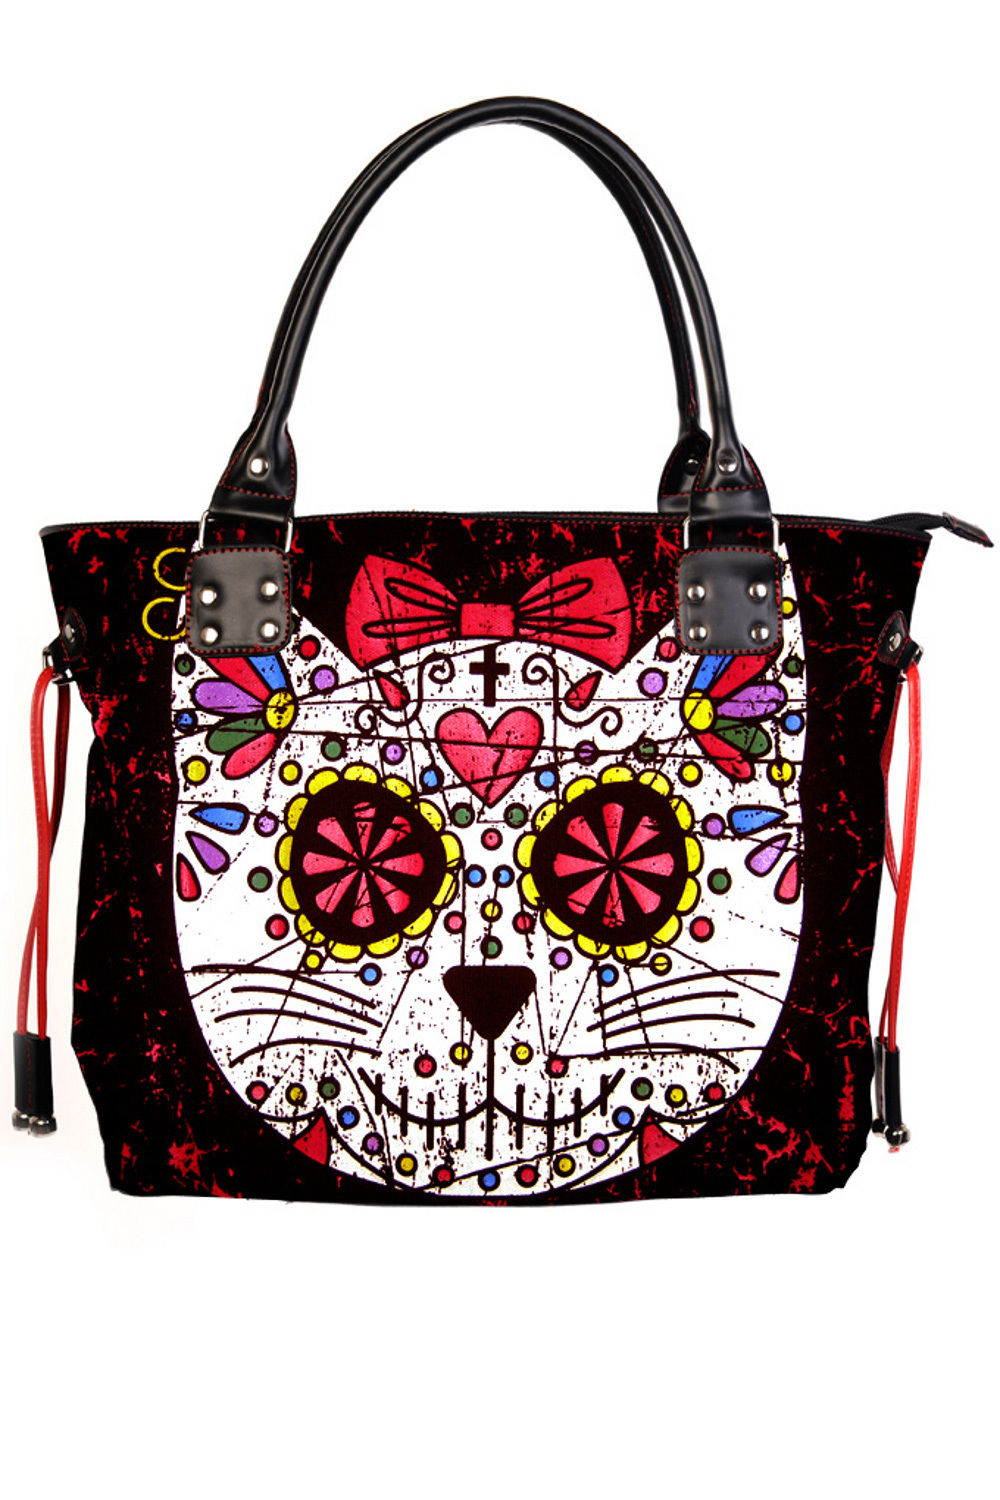 Women Lady Girl Sugar Skull Kitty Cat Candy Handbag School Shoulder Bag Gothic Punk Rockabilly